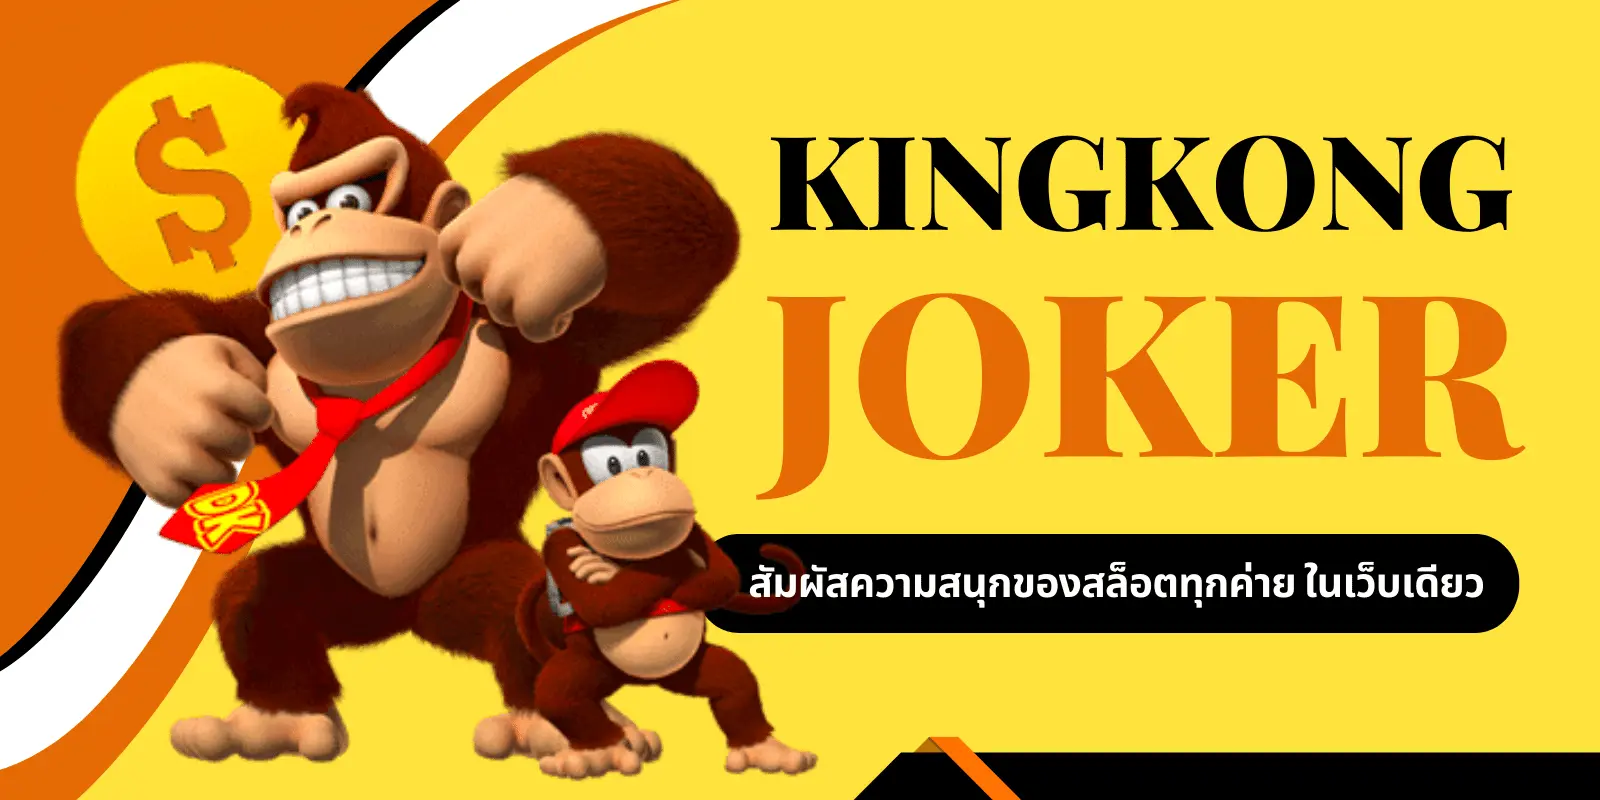 kingkong joker สัมผัสความสนุกของสล็อตทุกค่าย ในเว็บเดียว